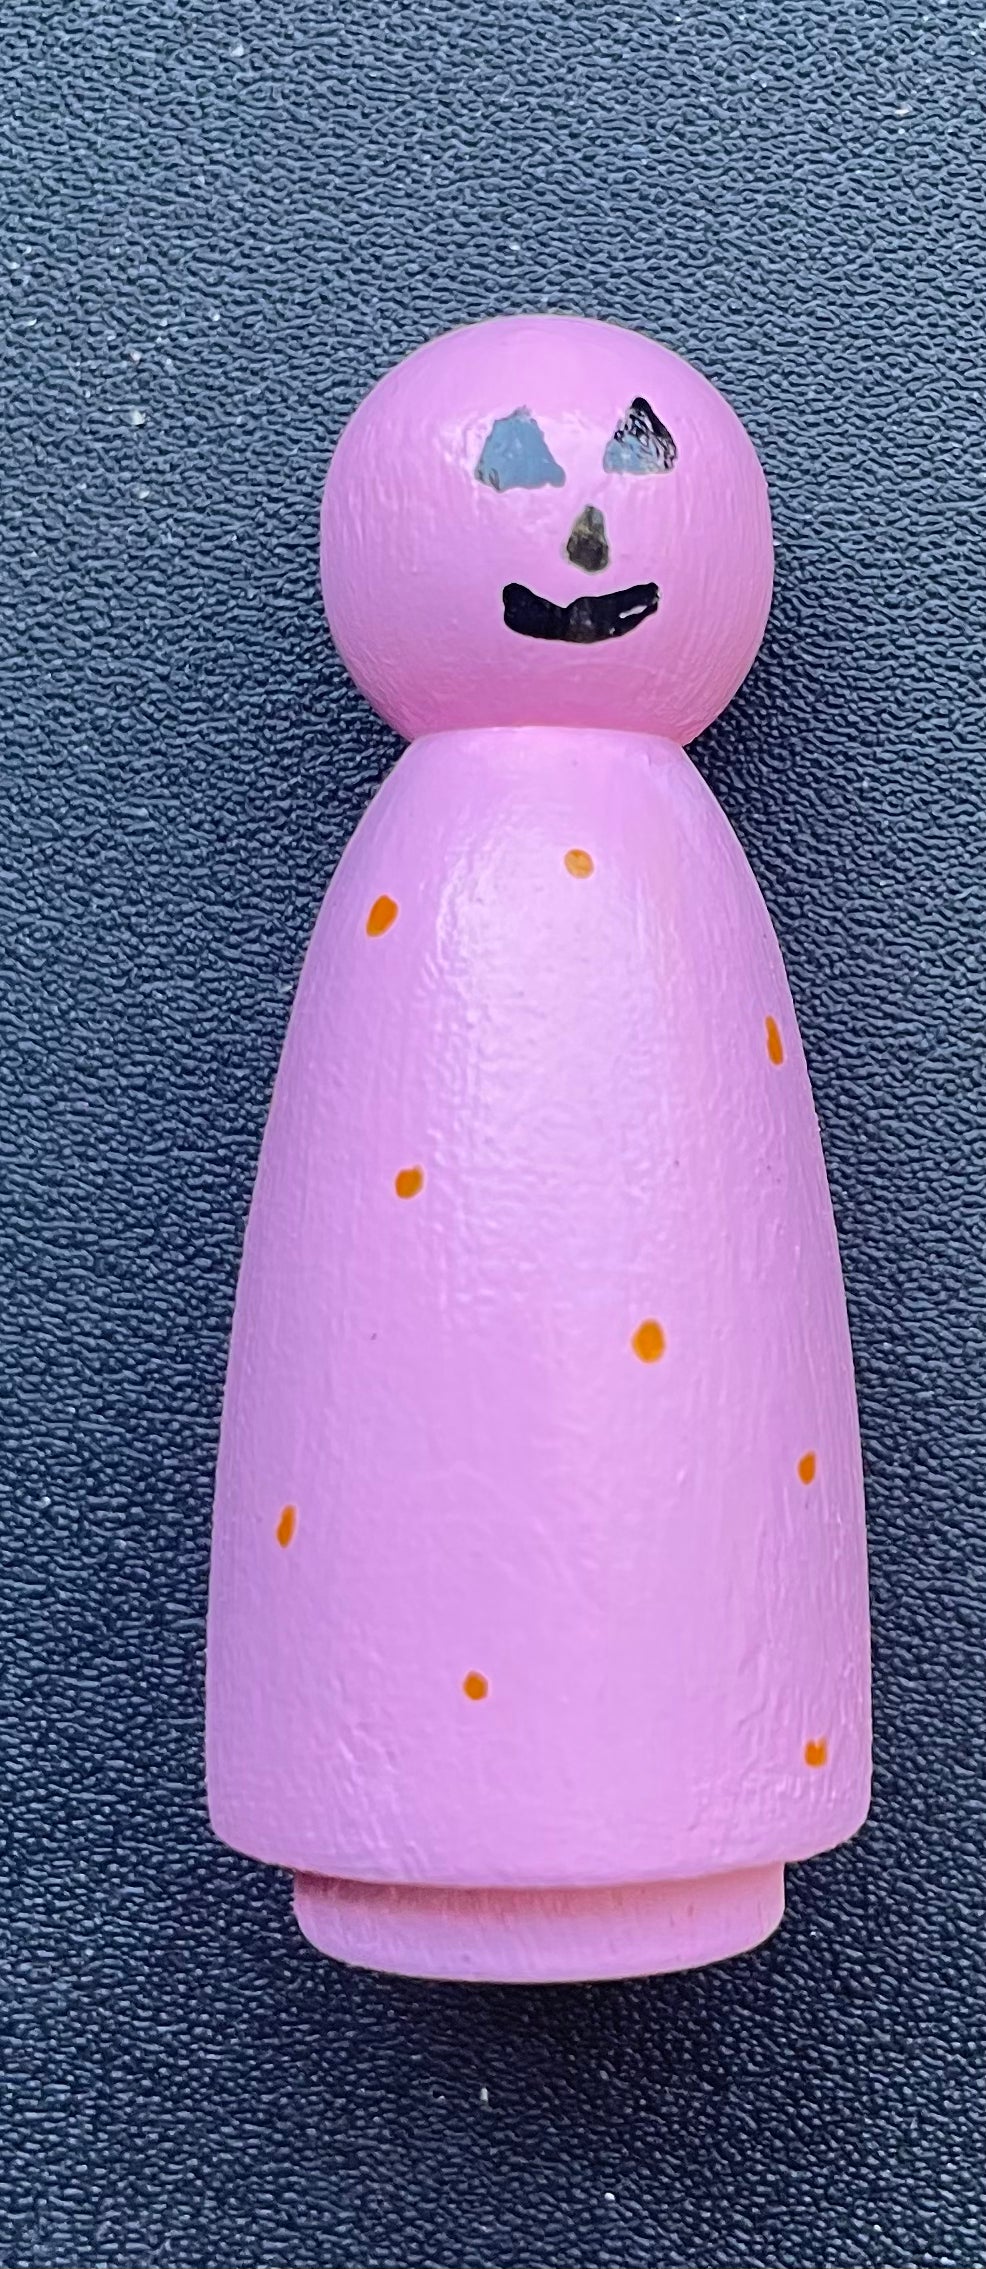 2” Pink Jackolantern Peg Doll